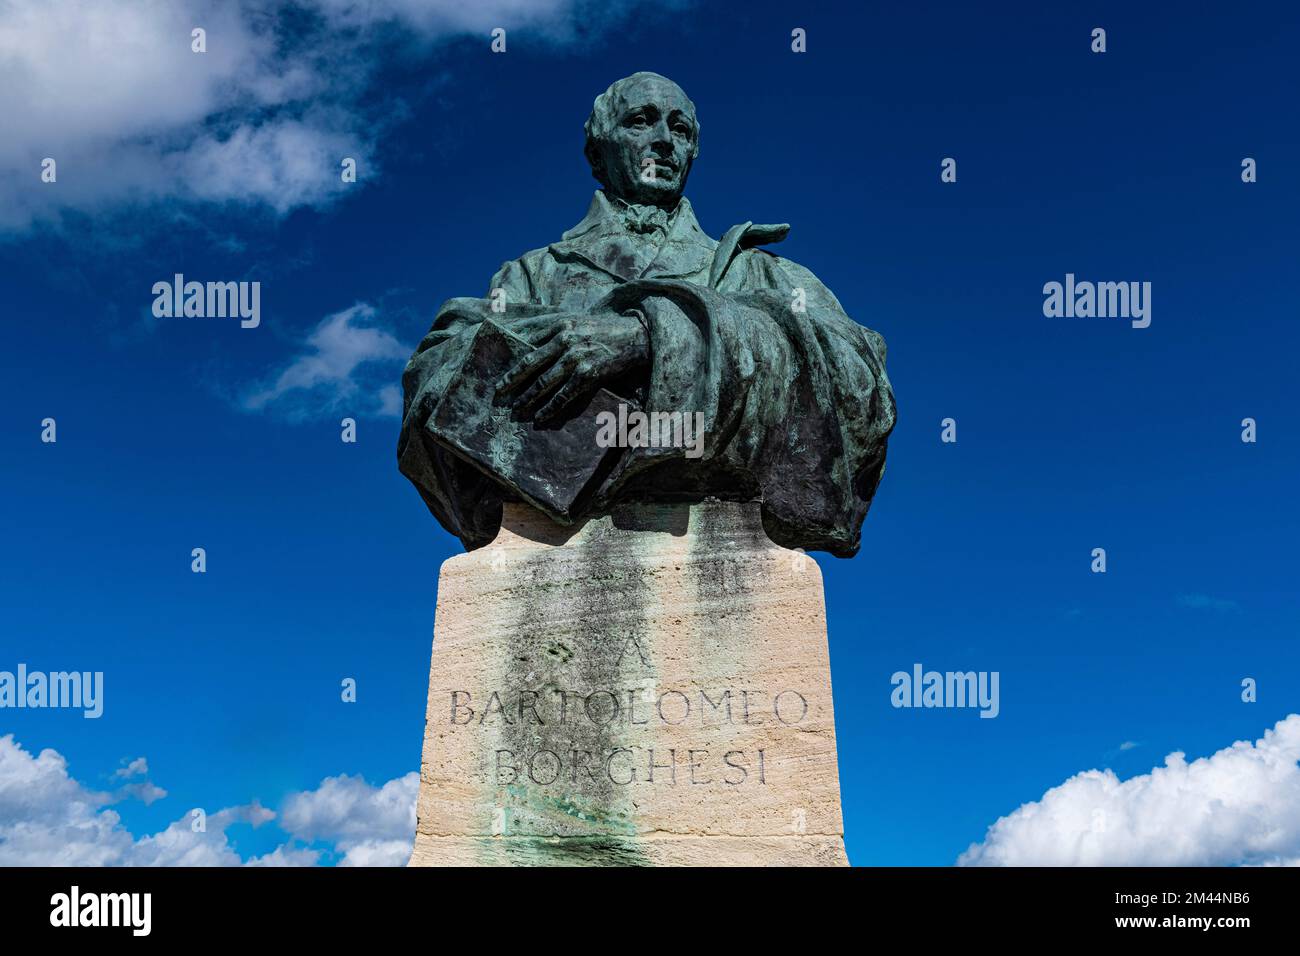 Monumento Bartolomeo Borghesi, centro storico, sito patrimonio dell'umanità dell'UNESCO San Marino, Italia Foto Stock